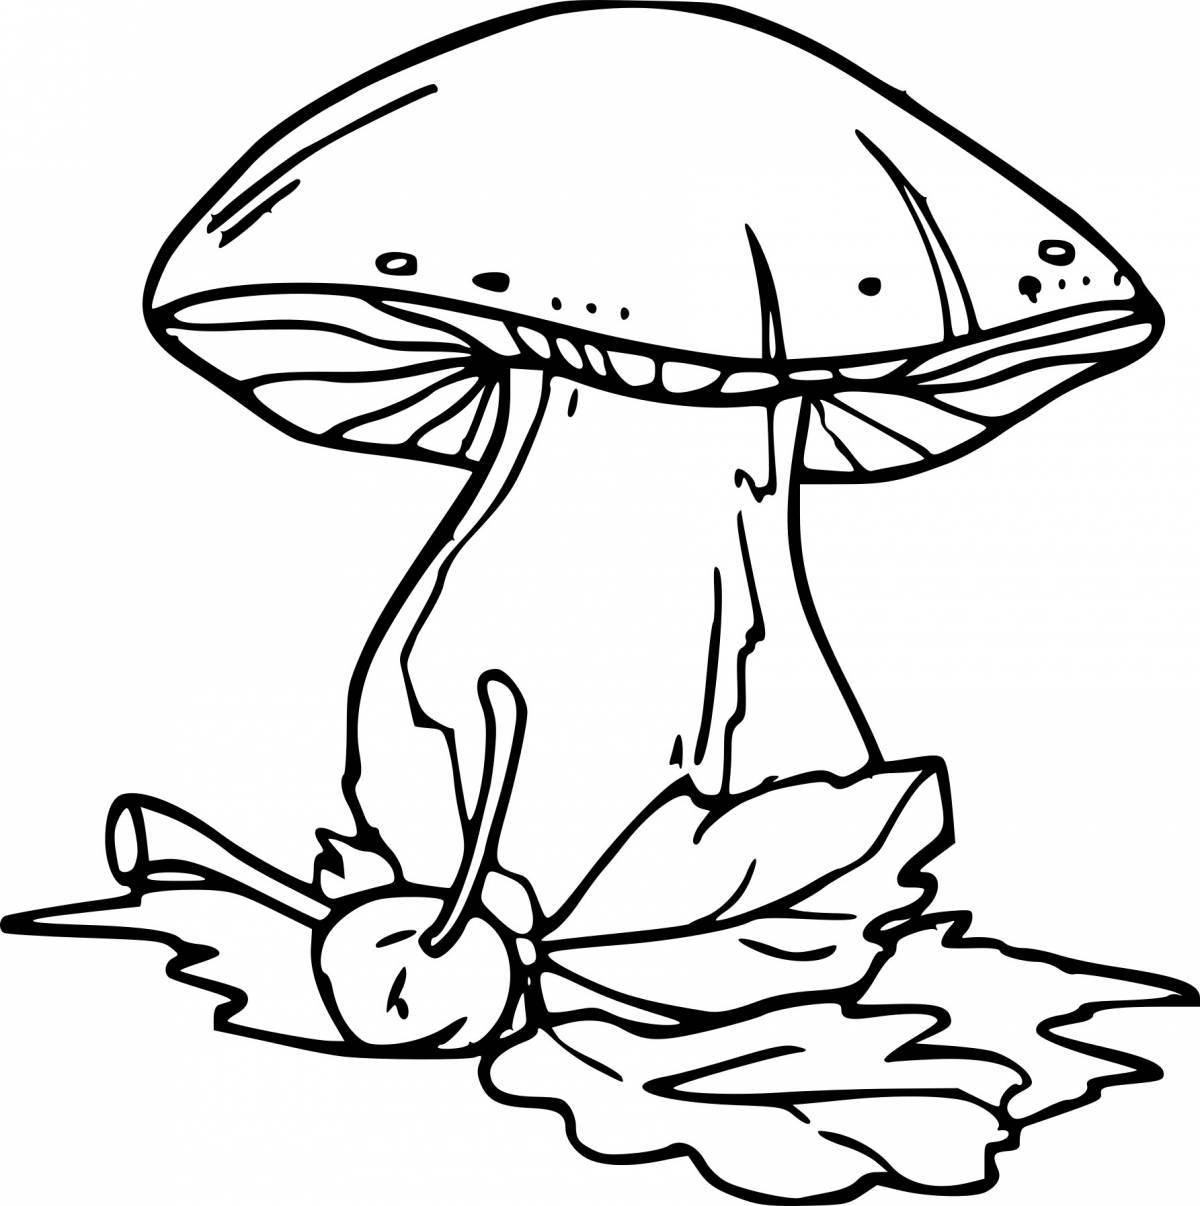 Увлекательная раскраска грибов для детей 3-4 лет